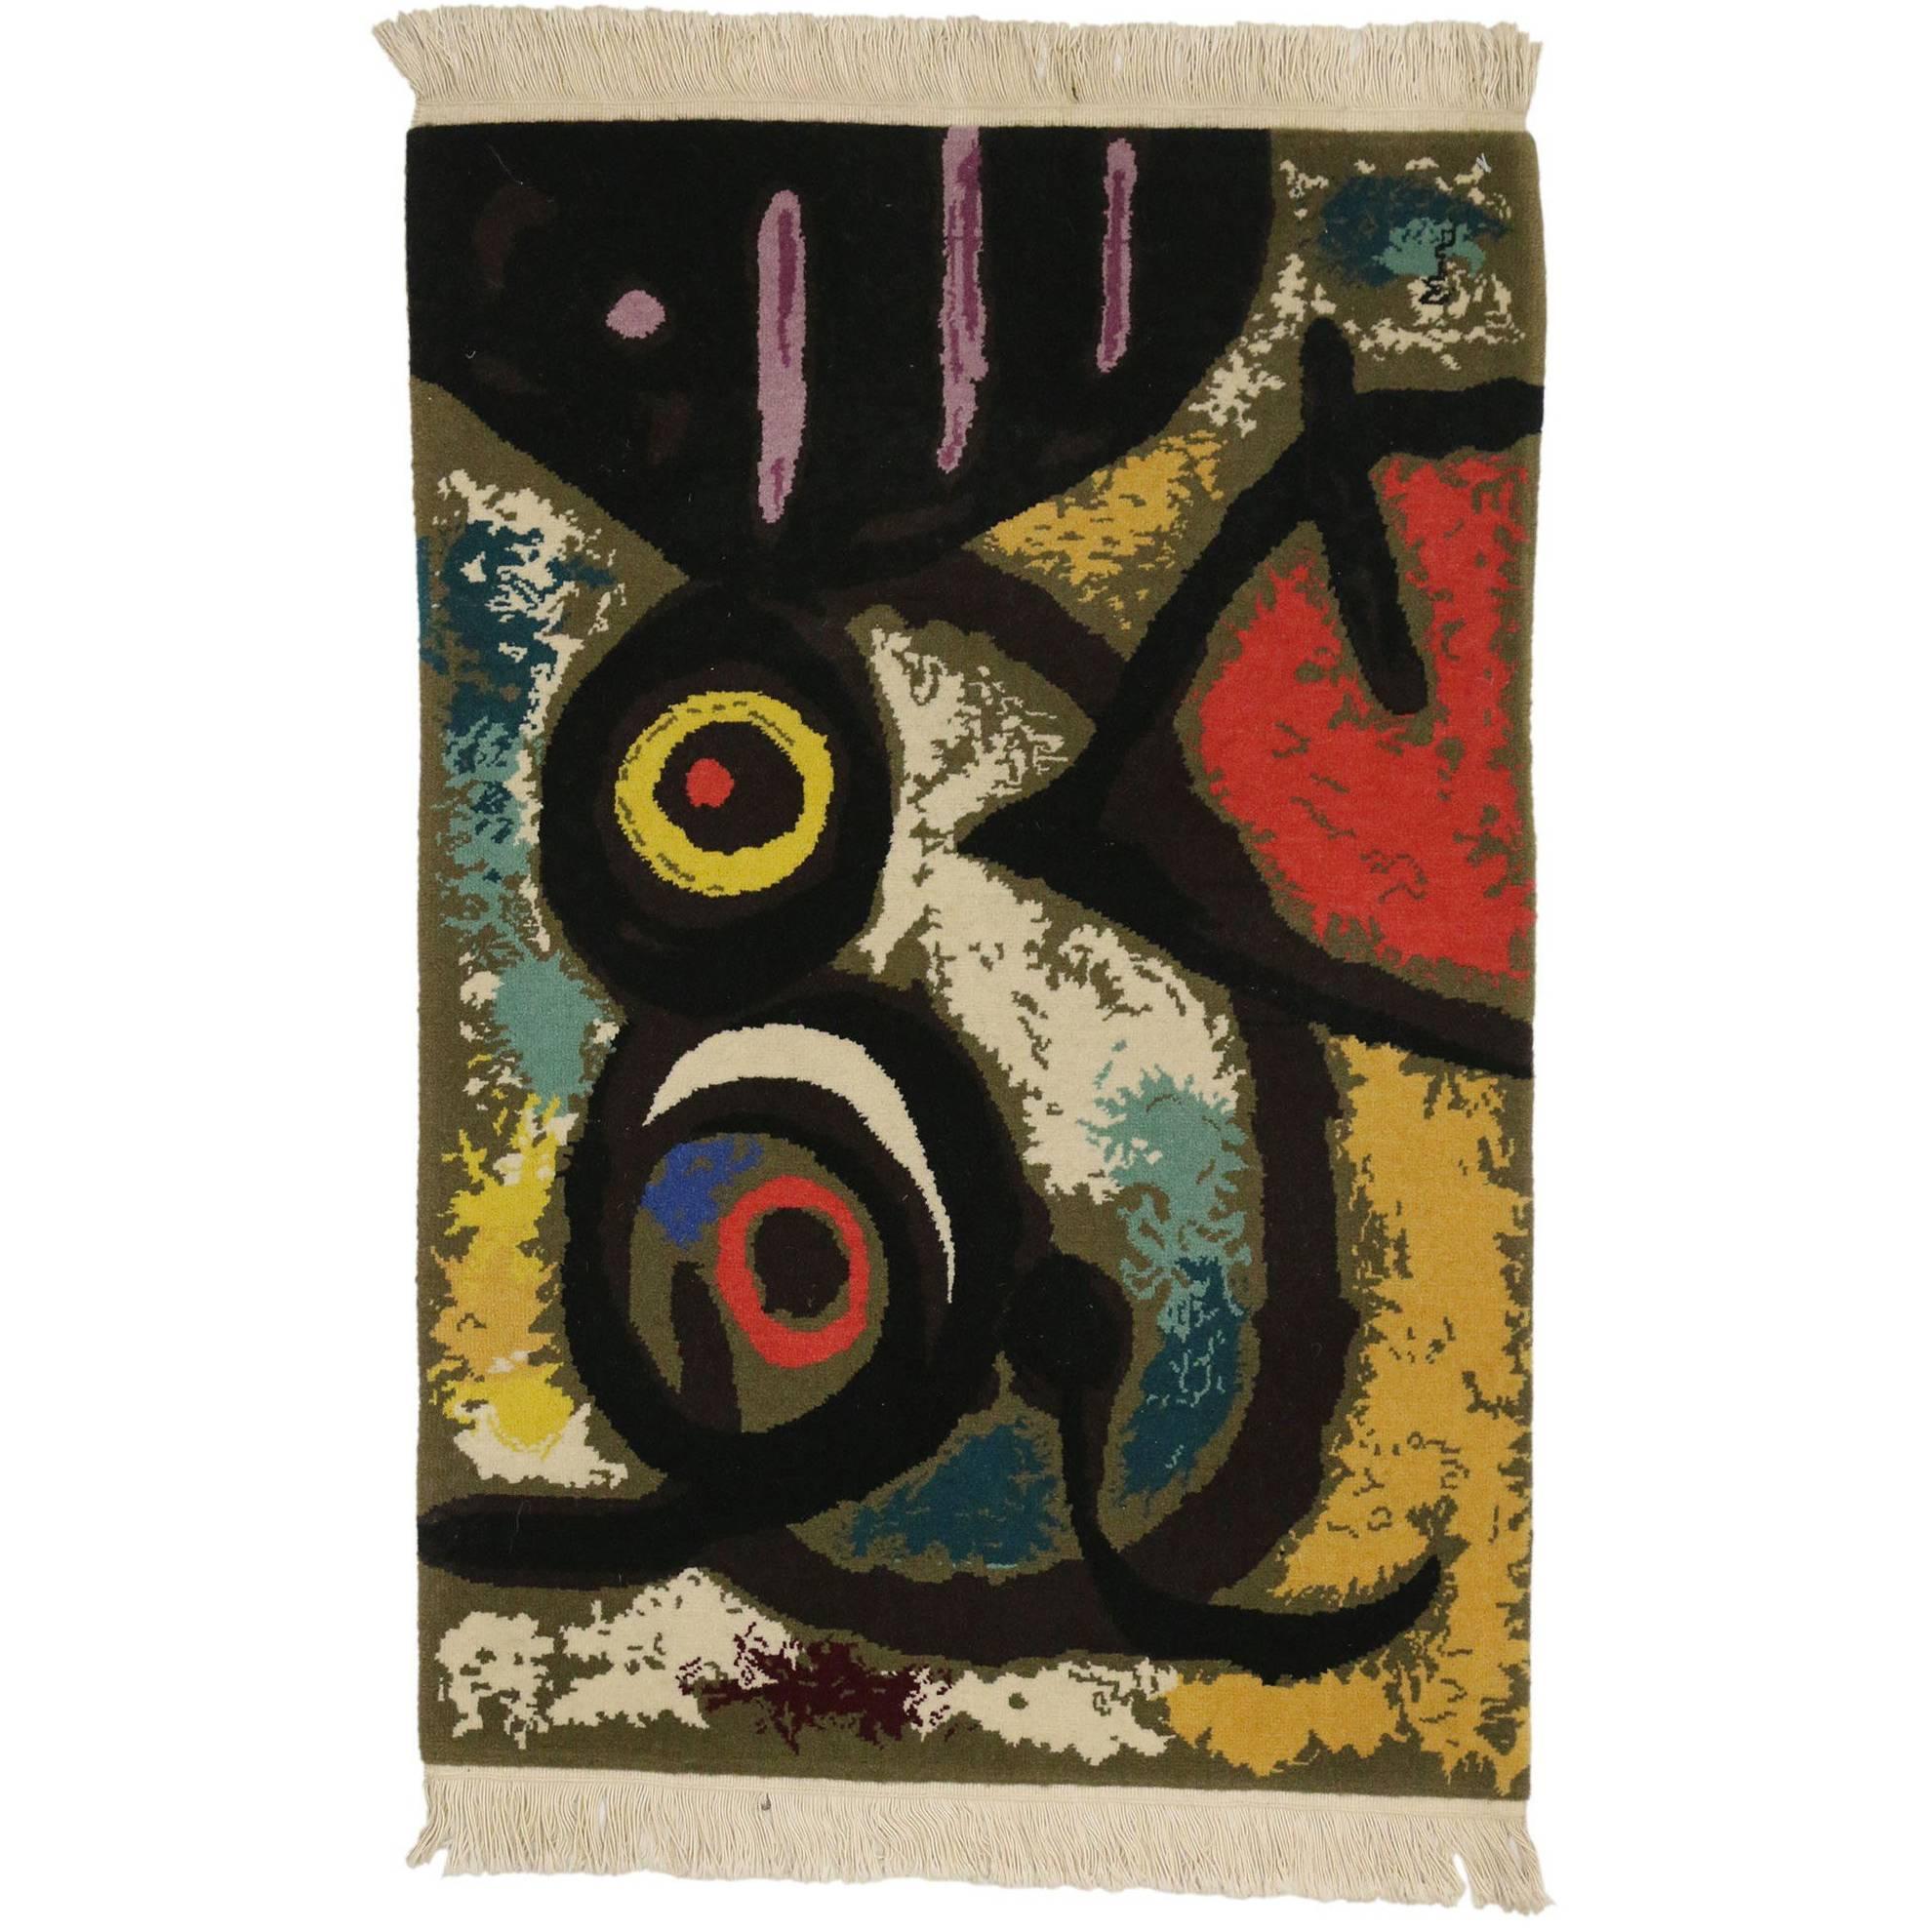 Tapisserie de style surréaliste d'après Femme et Oiseaux de Joan Miro